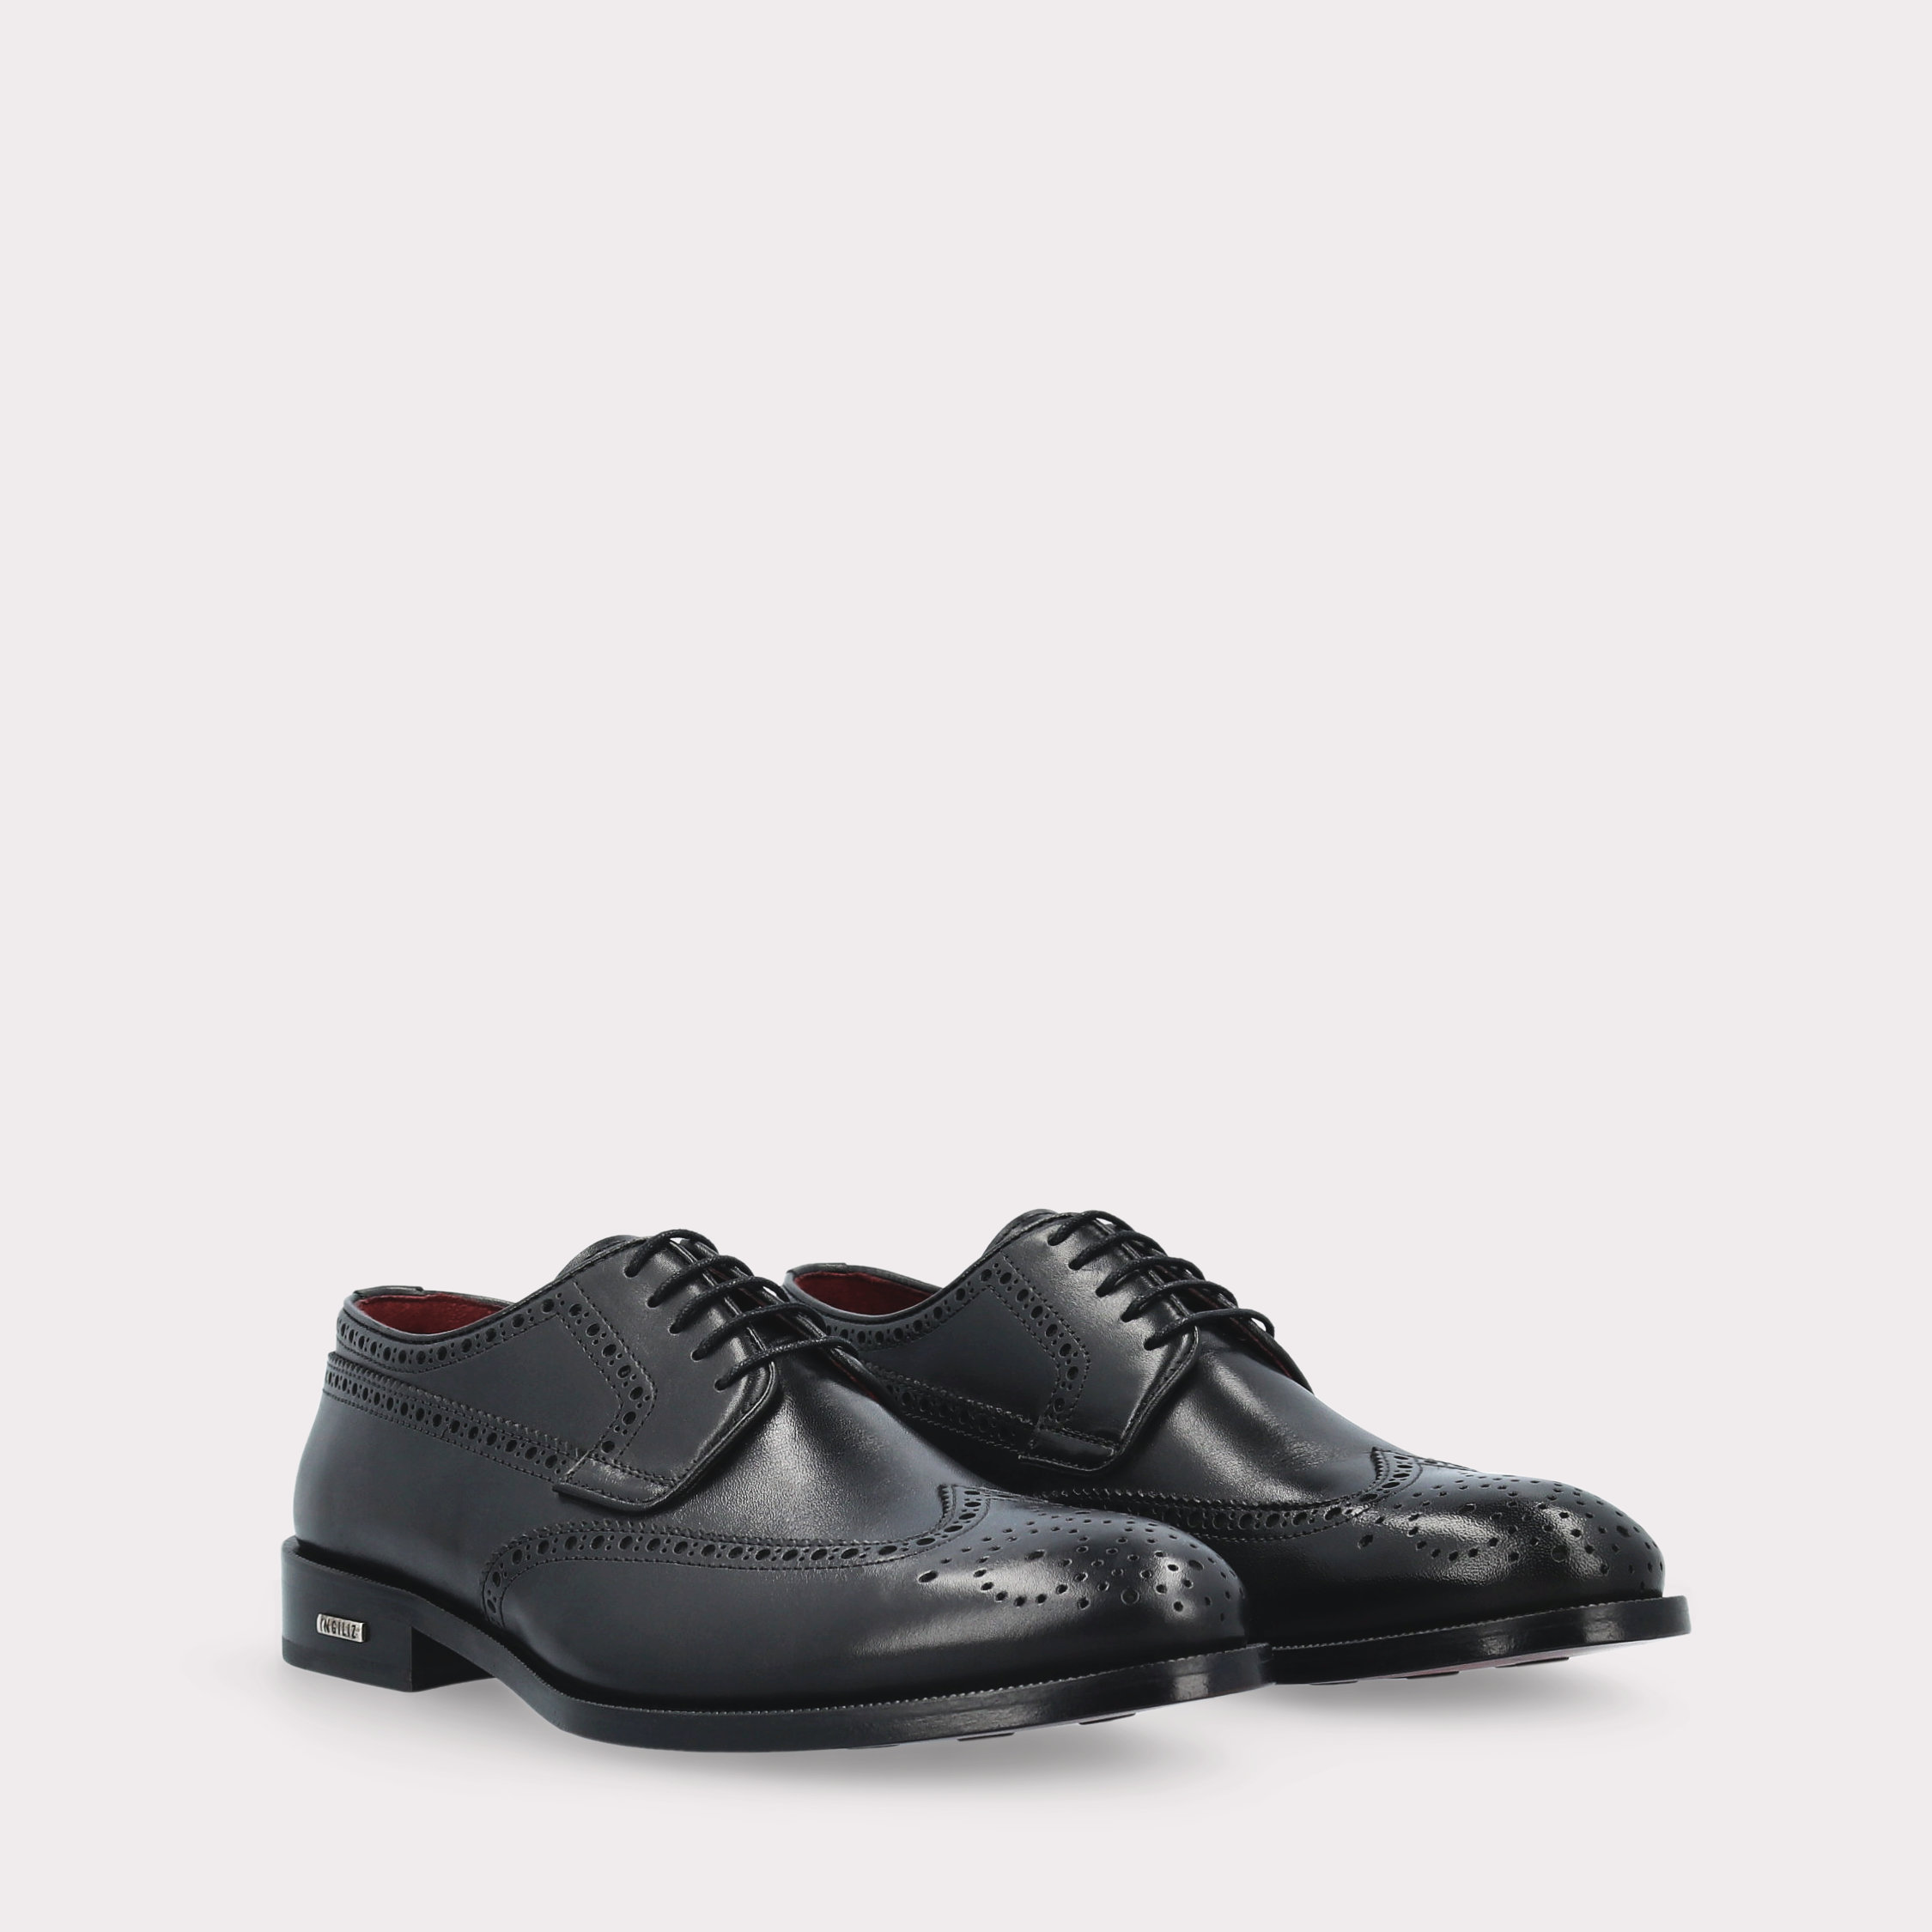 BERGAMO 01 black leather derby shoes